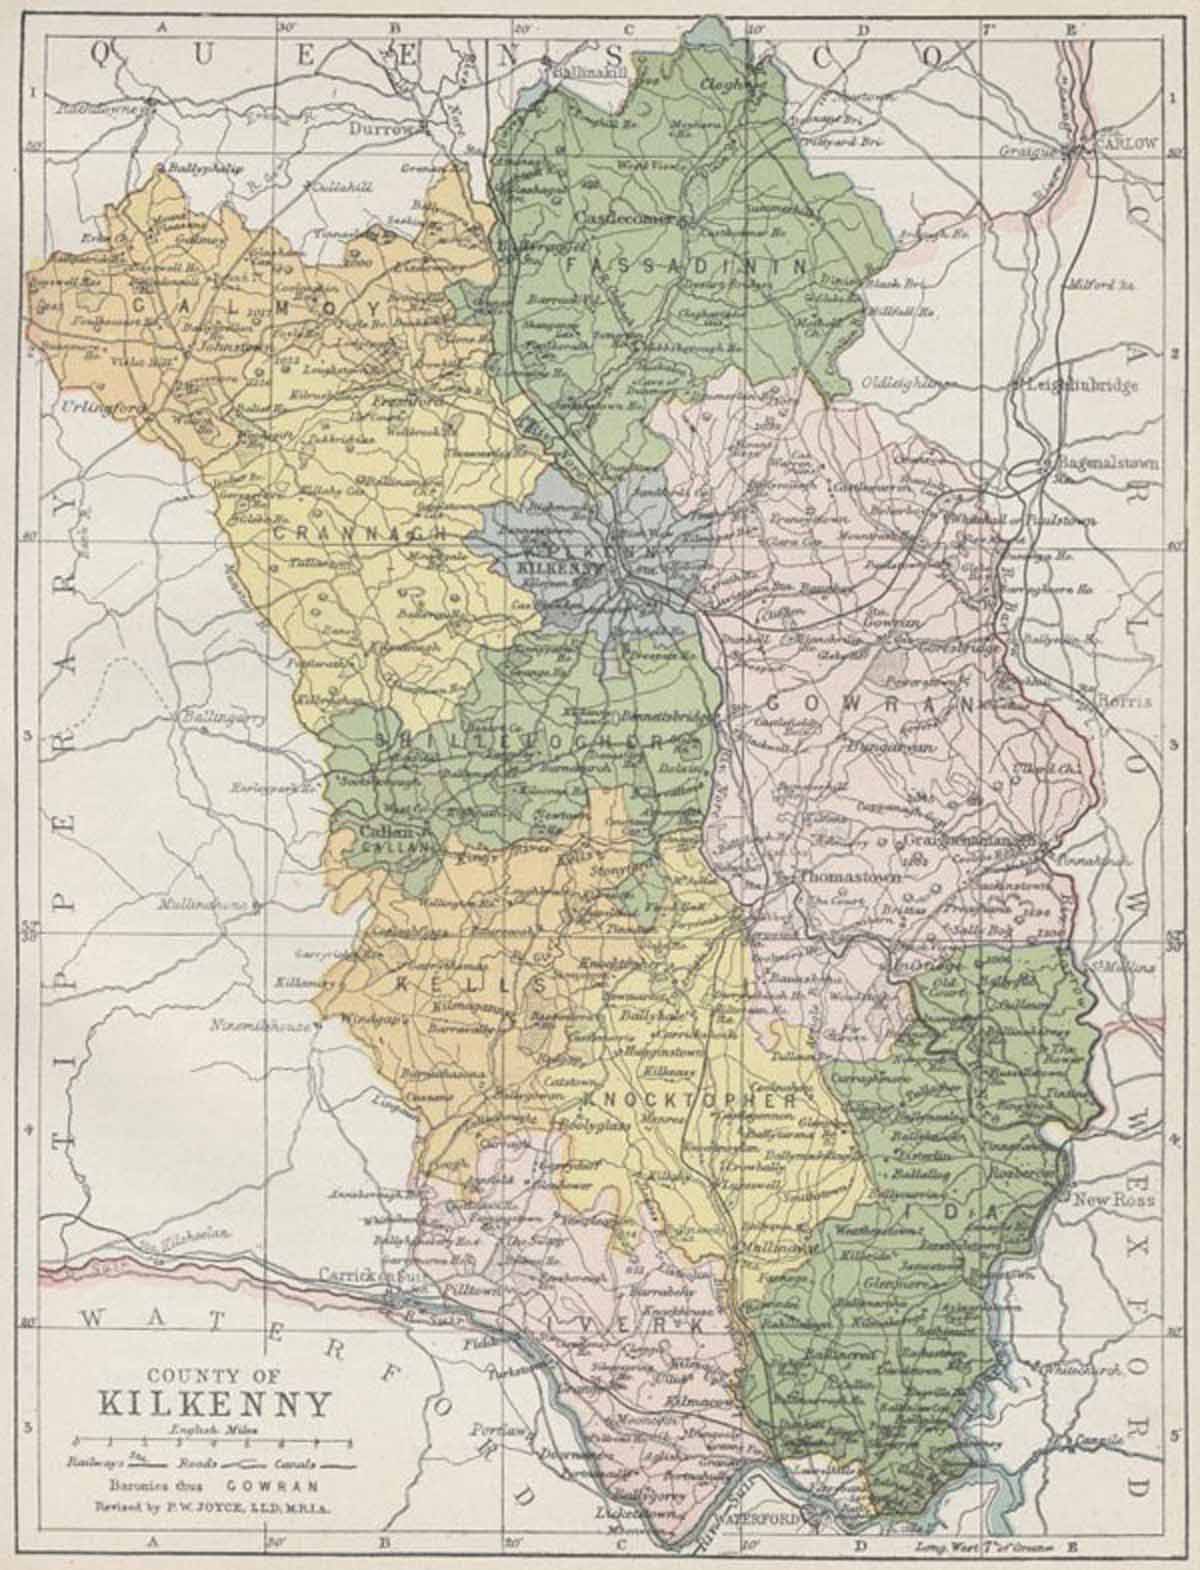 Kilkenny Map 600 